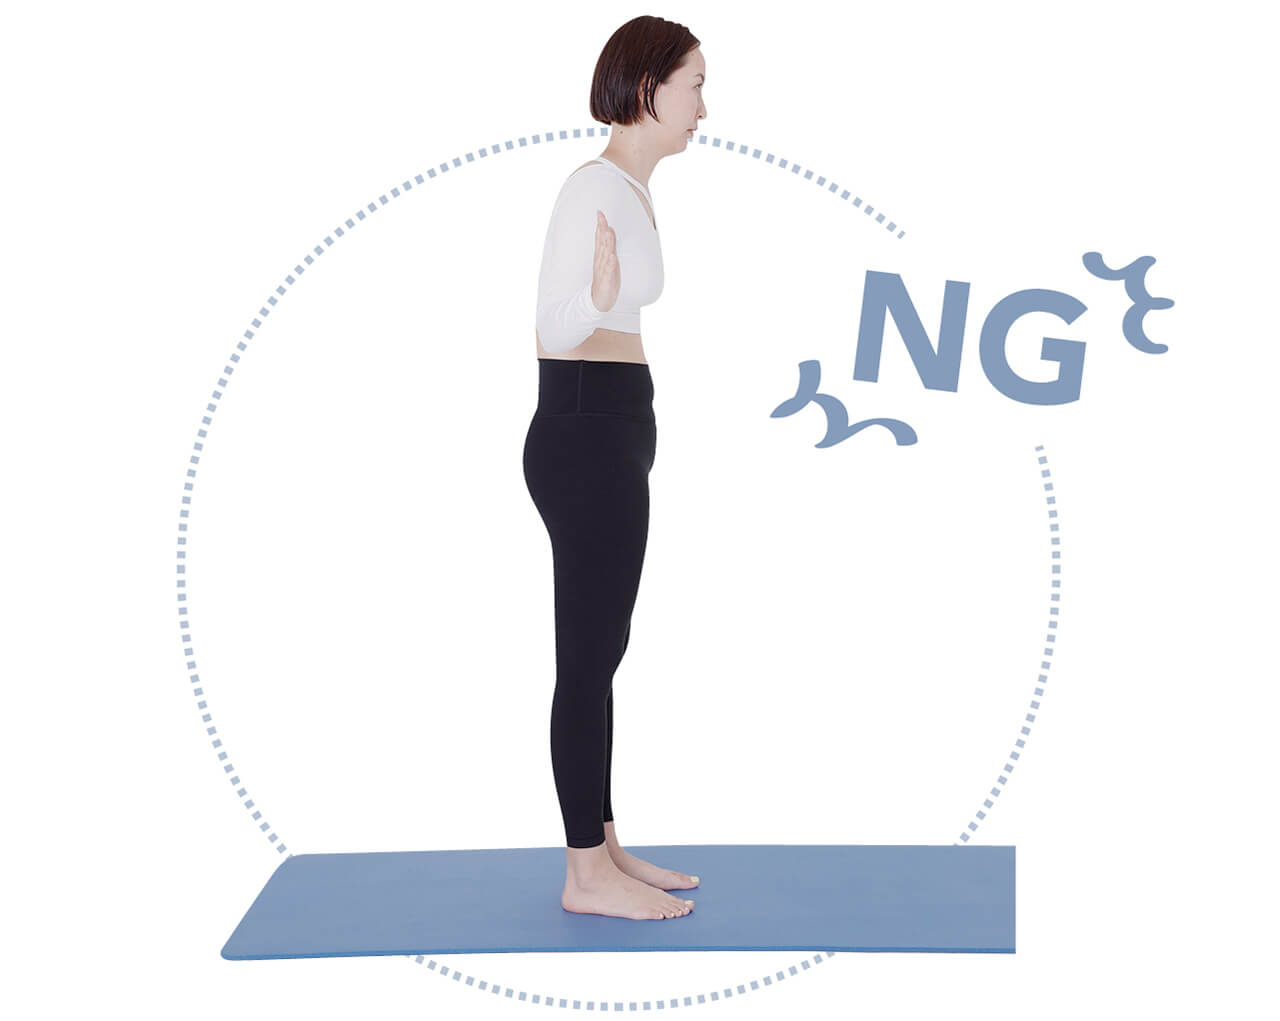 NG　手が前に出ると、背中が丸まってしまう。肩甲骨を後ろに寄せるように意識して動いて。